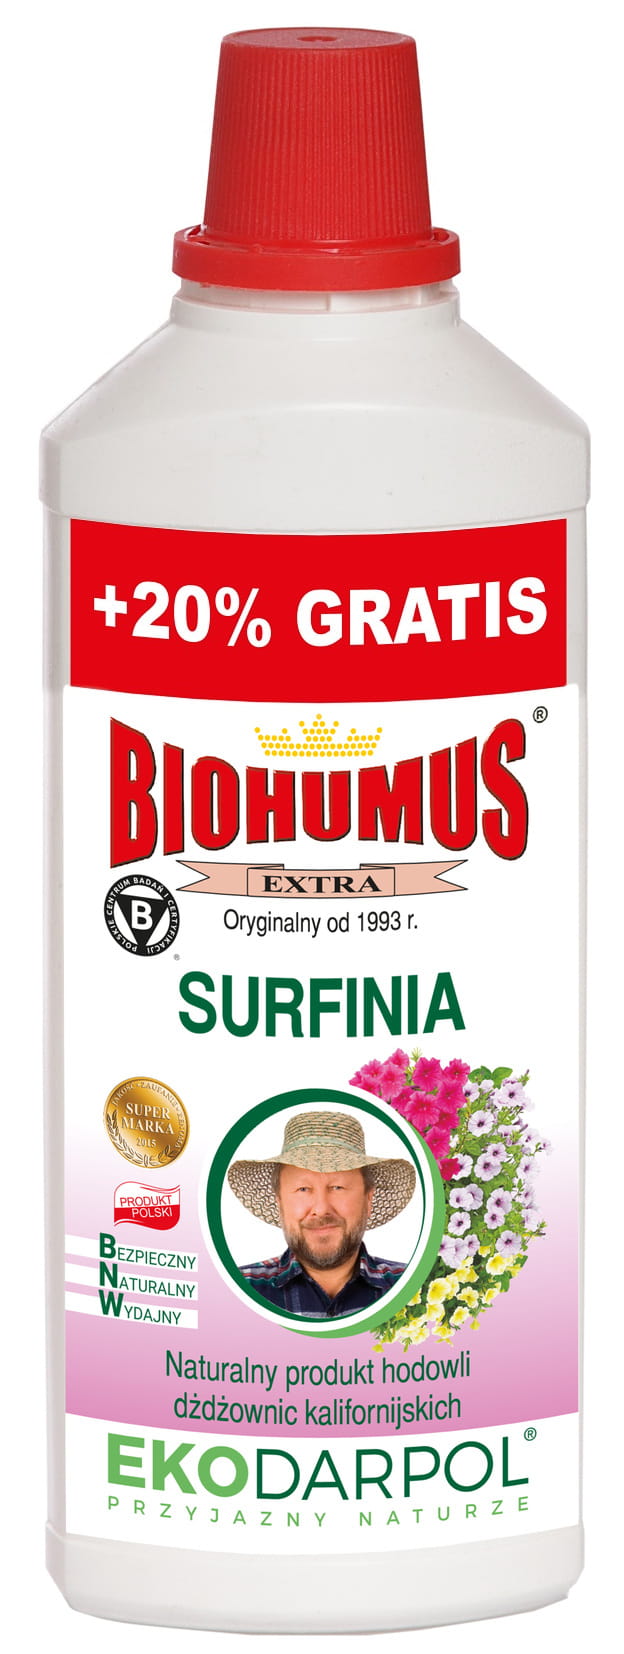  Biohumus ekstra surfinia1L – Ekodarpol